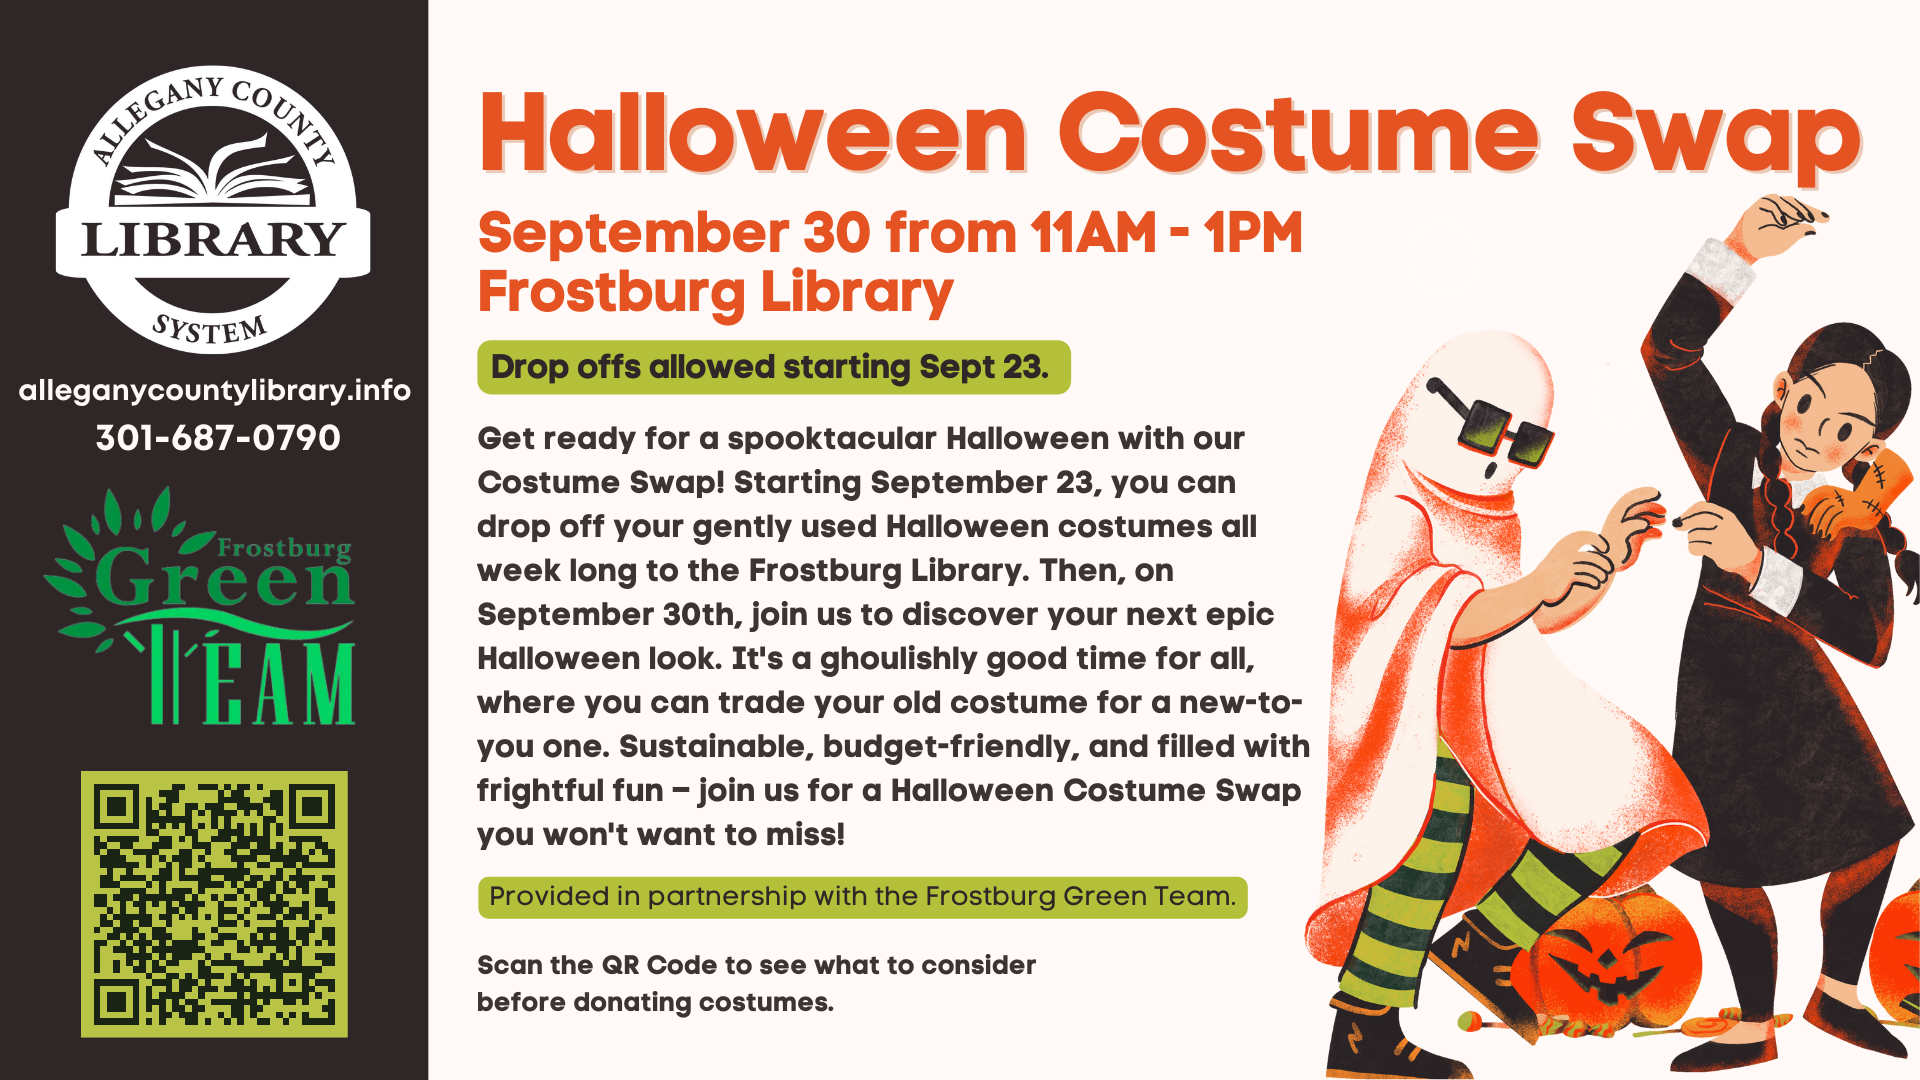 Halloween Costume Swap Event Details